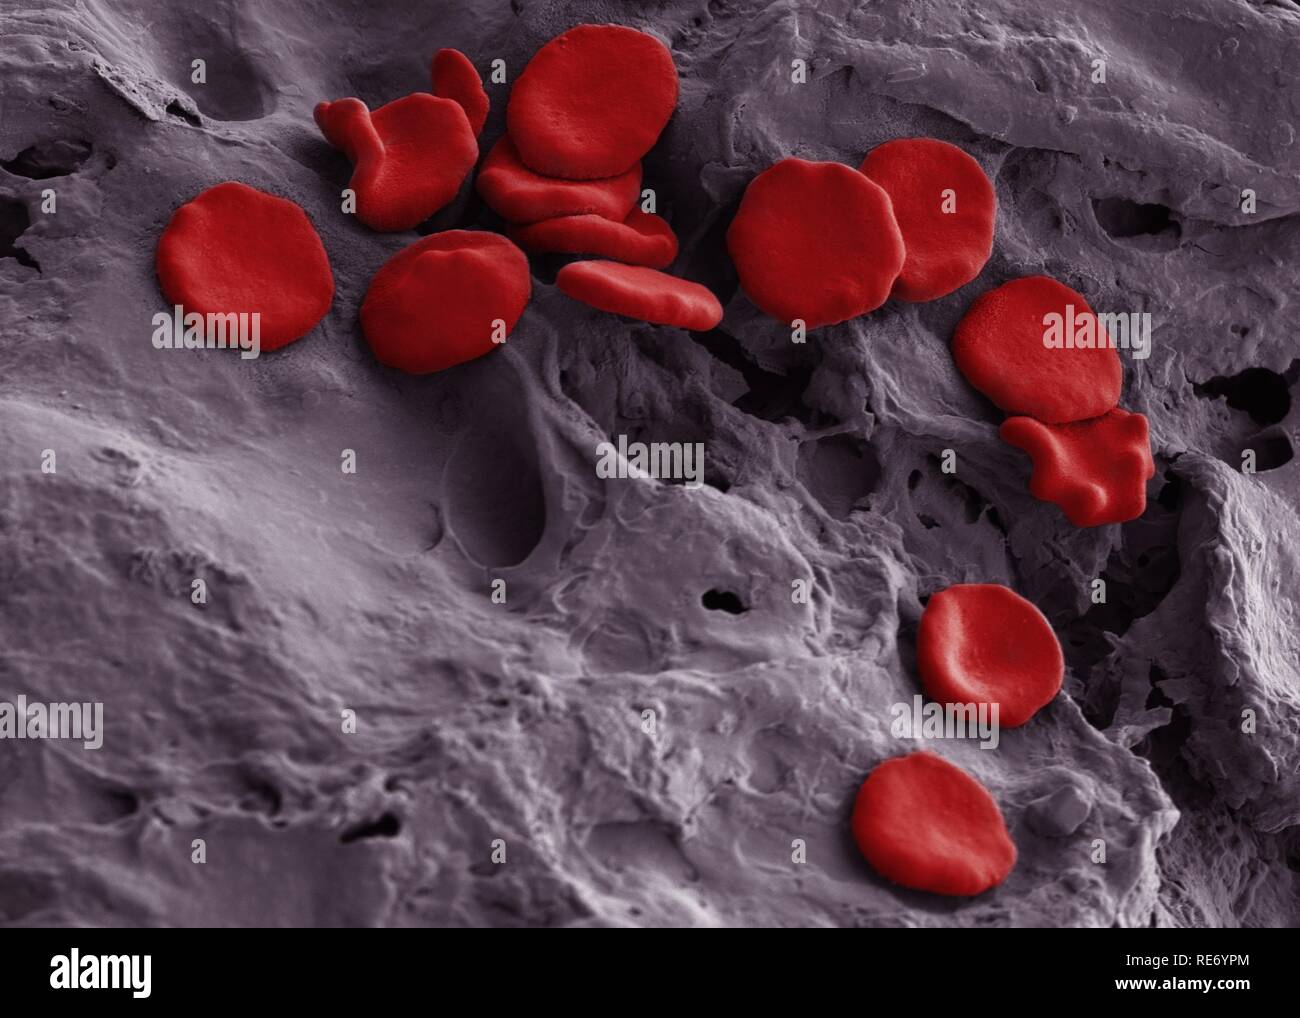 Glóbulos rojos de sangre humana. Fotografía BAM o SEM, con microscopio  electrónico de barrido. Se observan glóbulos rojos obtenidos de sangre  humana. Los glóbulos rojos también se denominan eritrocitos. Estas células  no